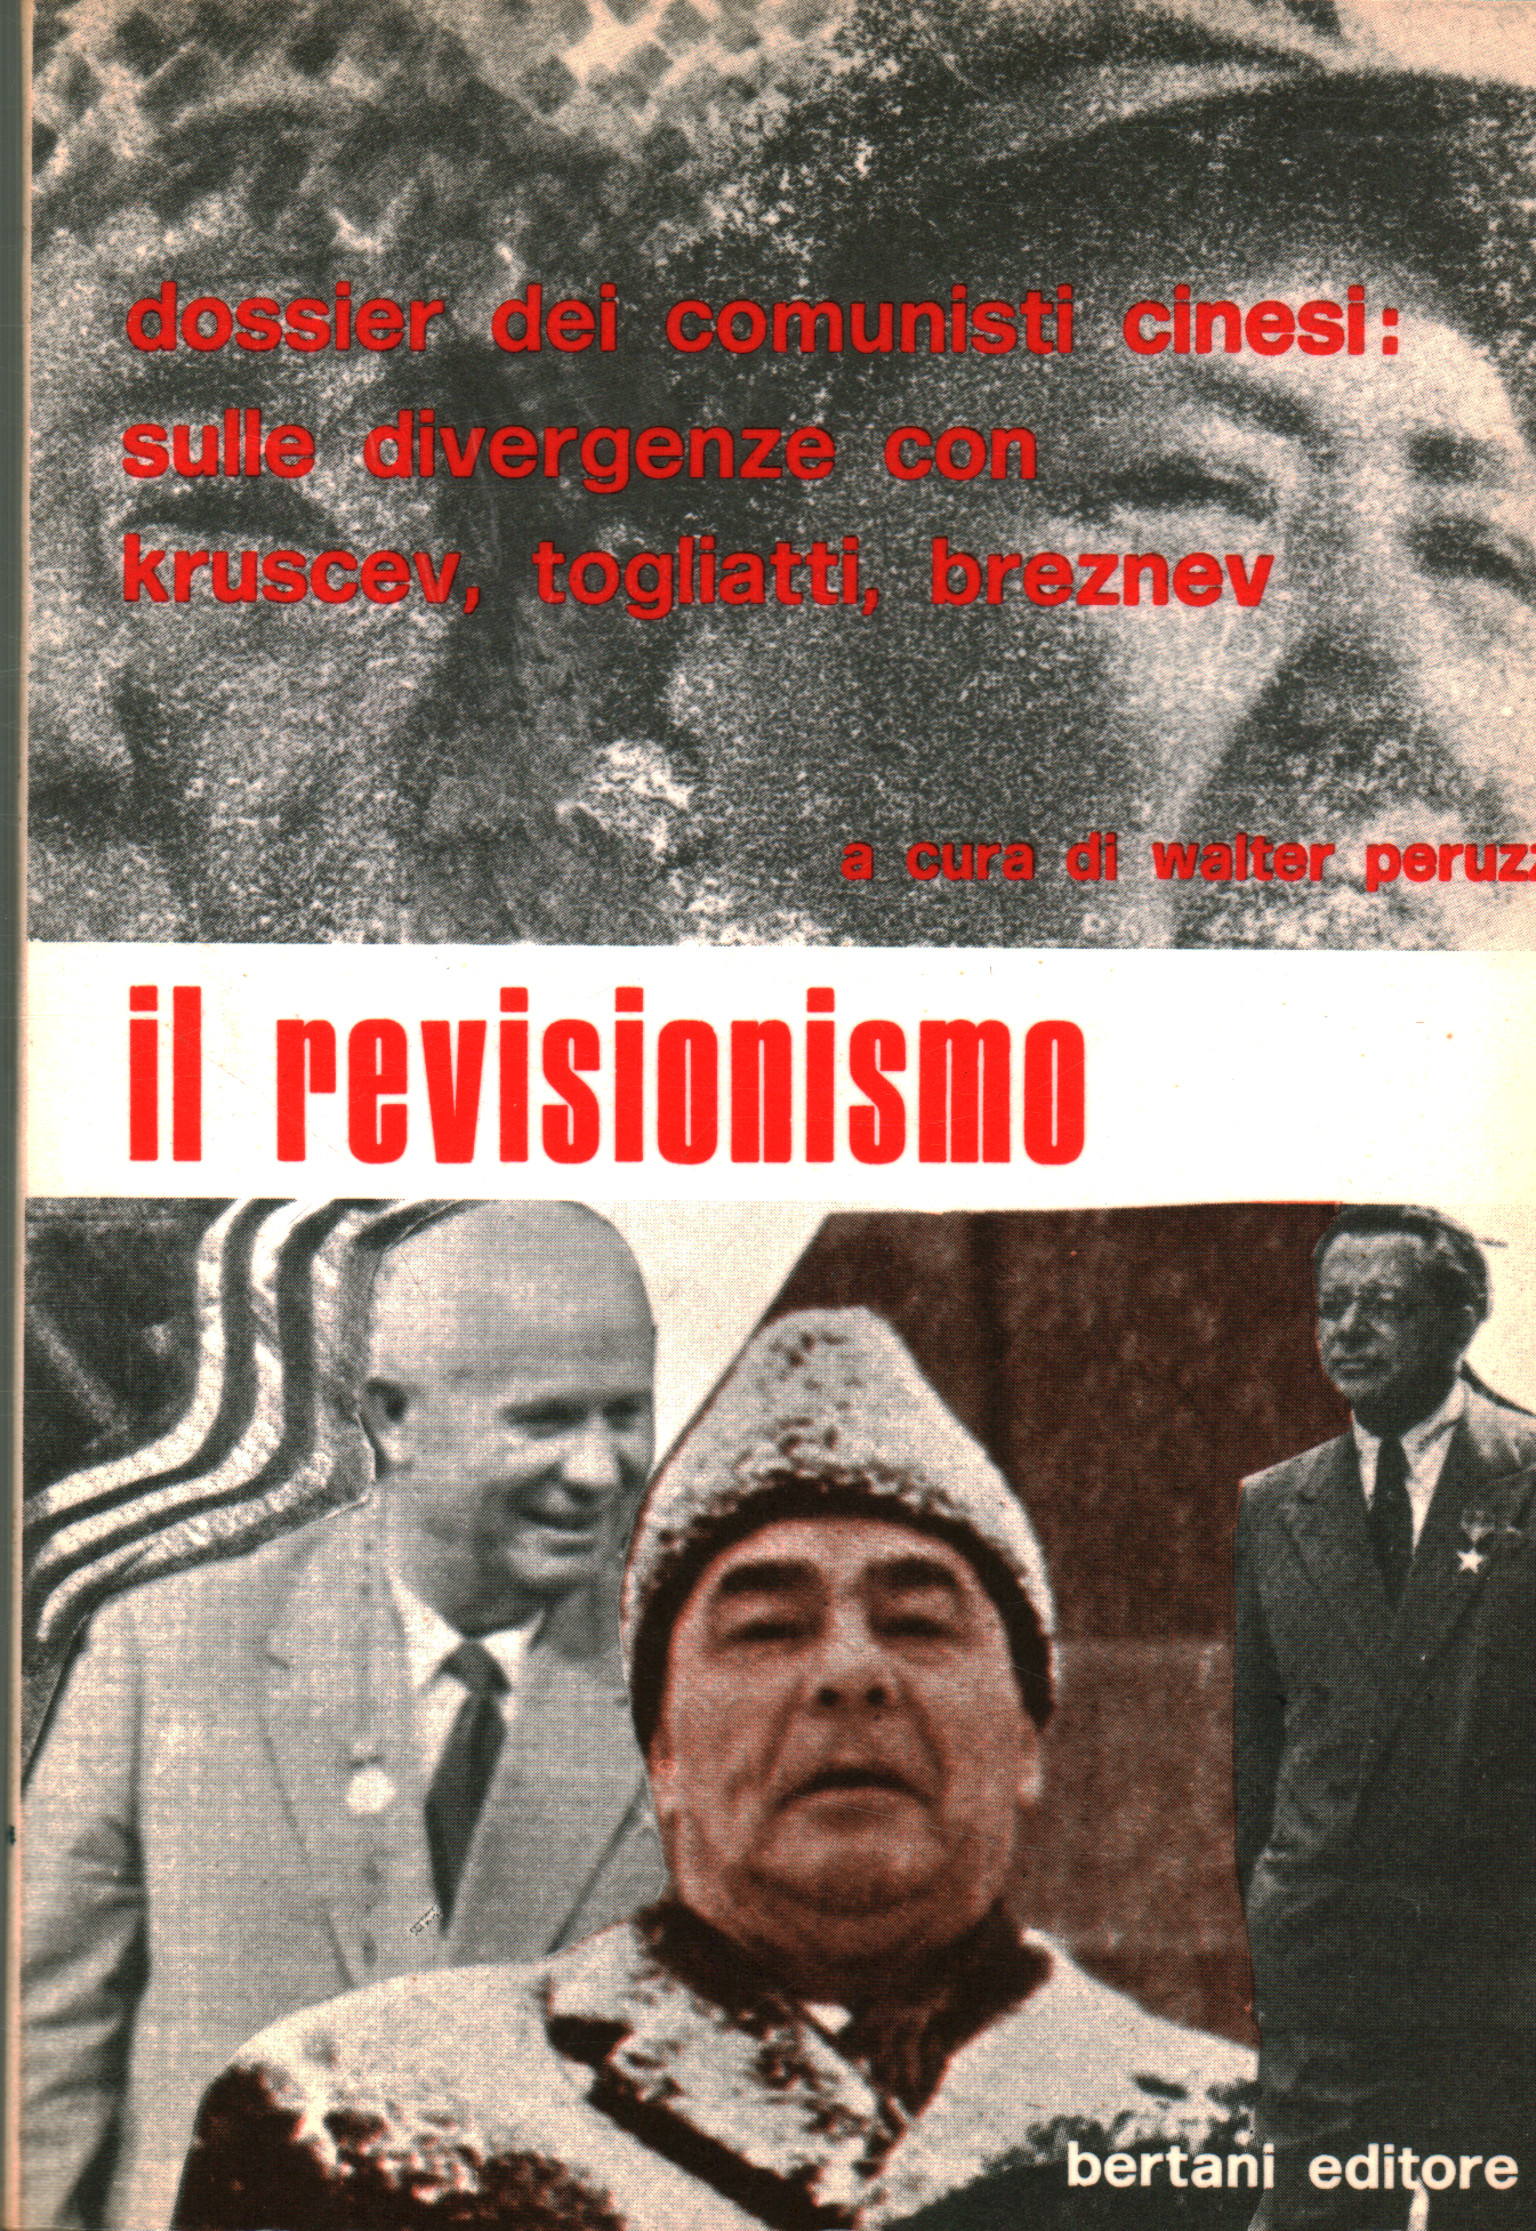 Il revisionismo, Walter Peruzzi